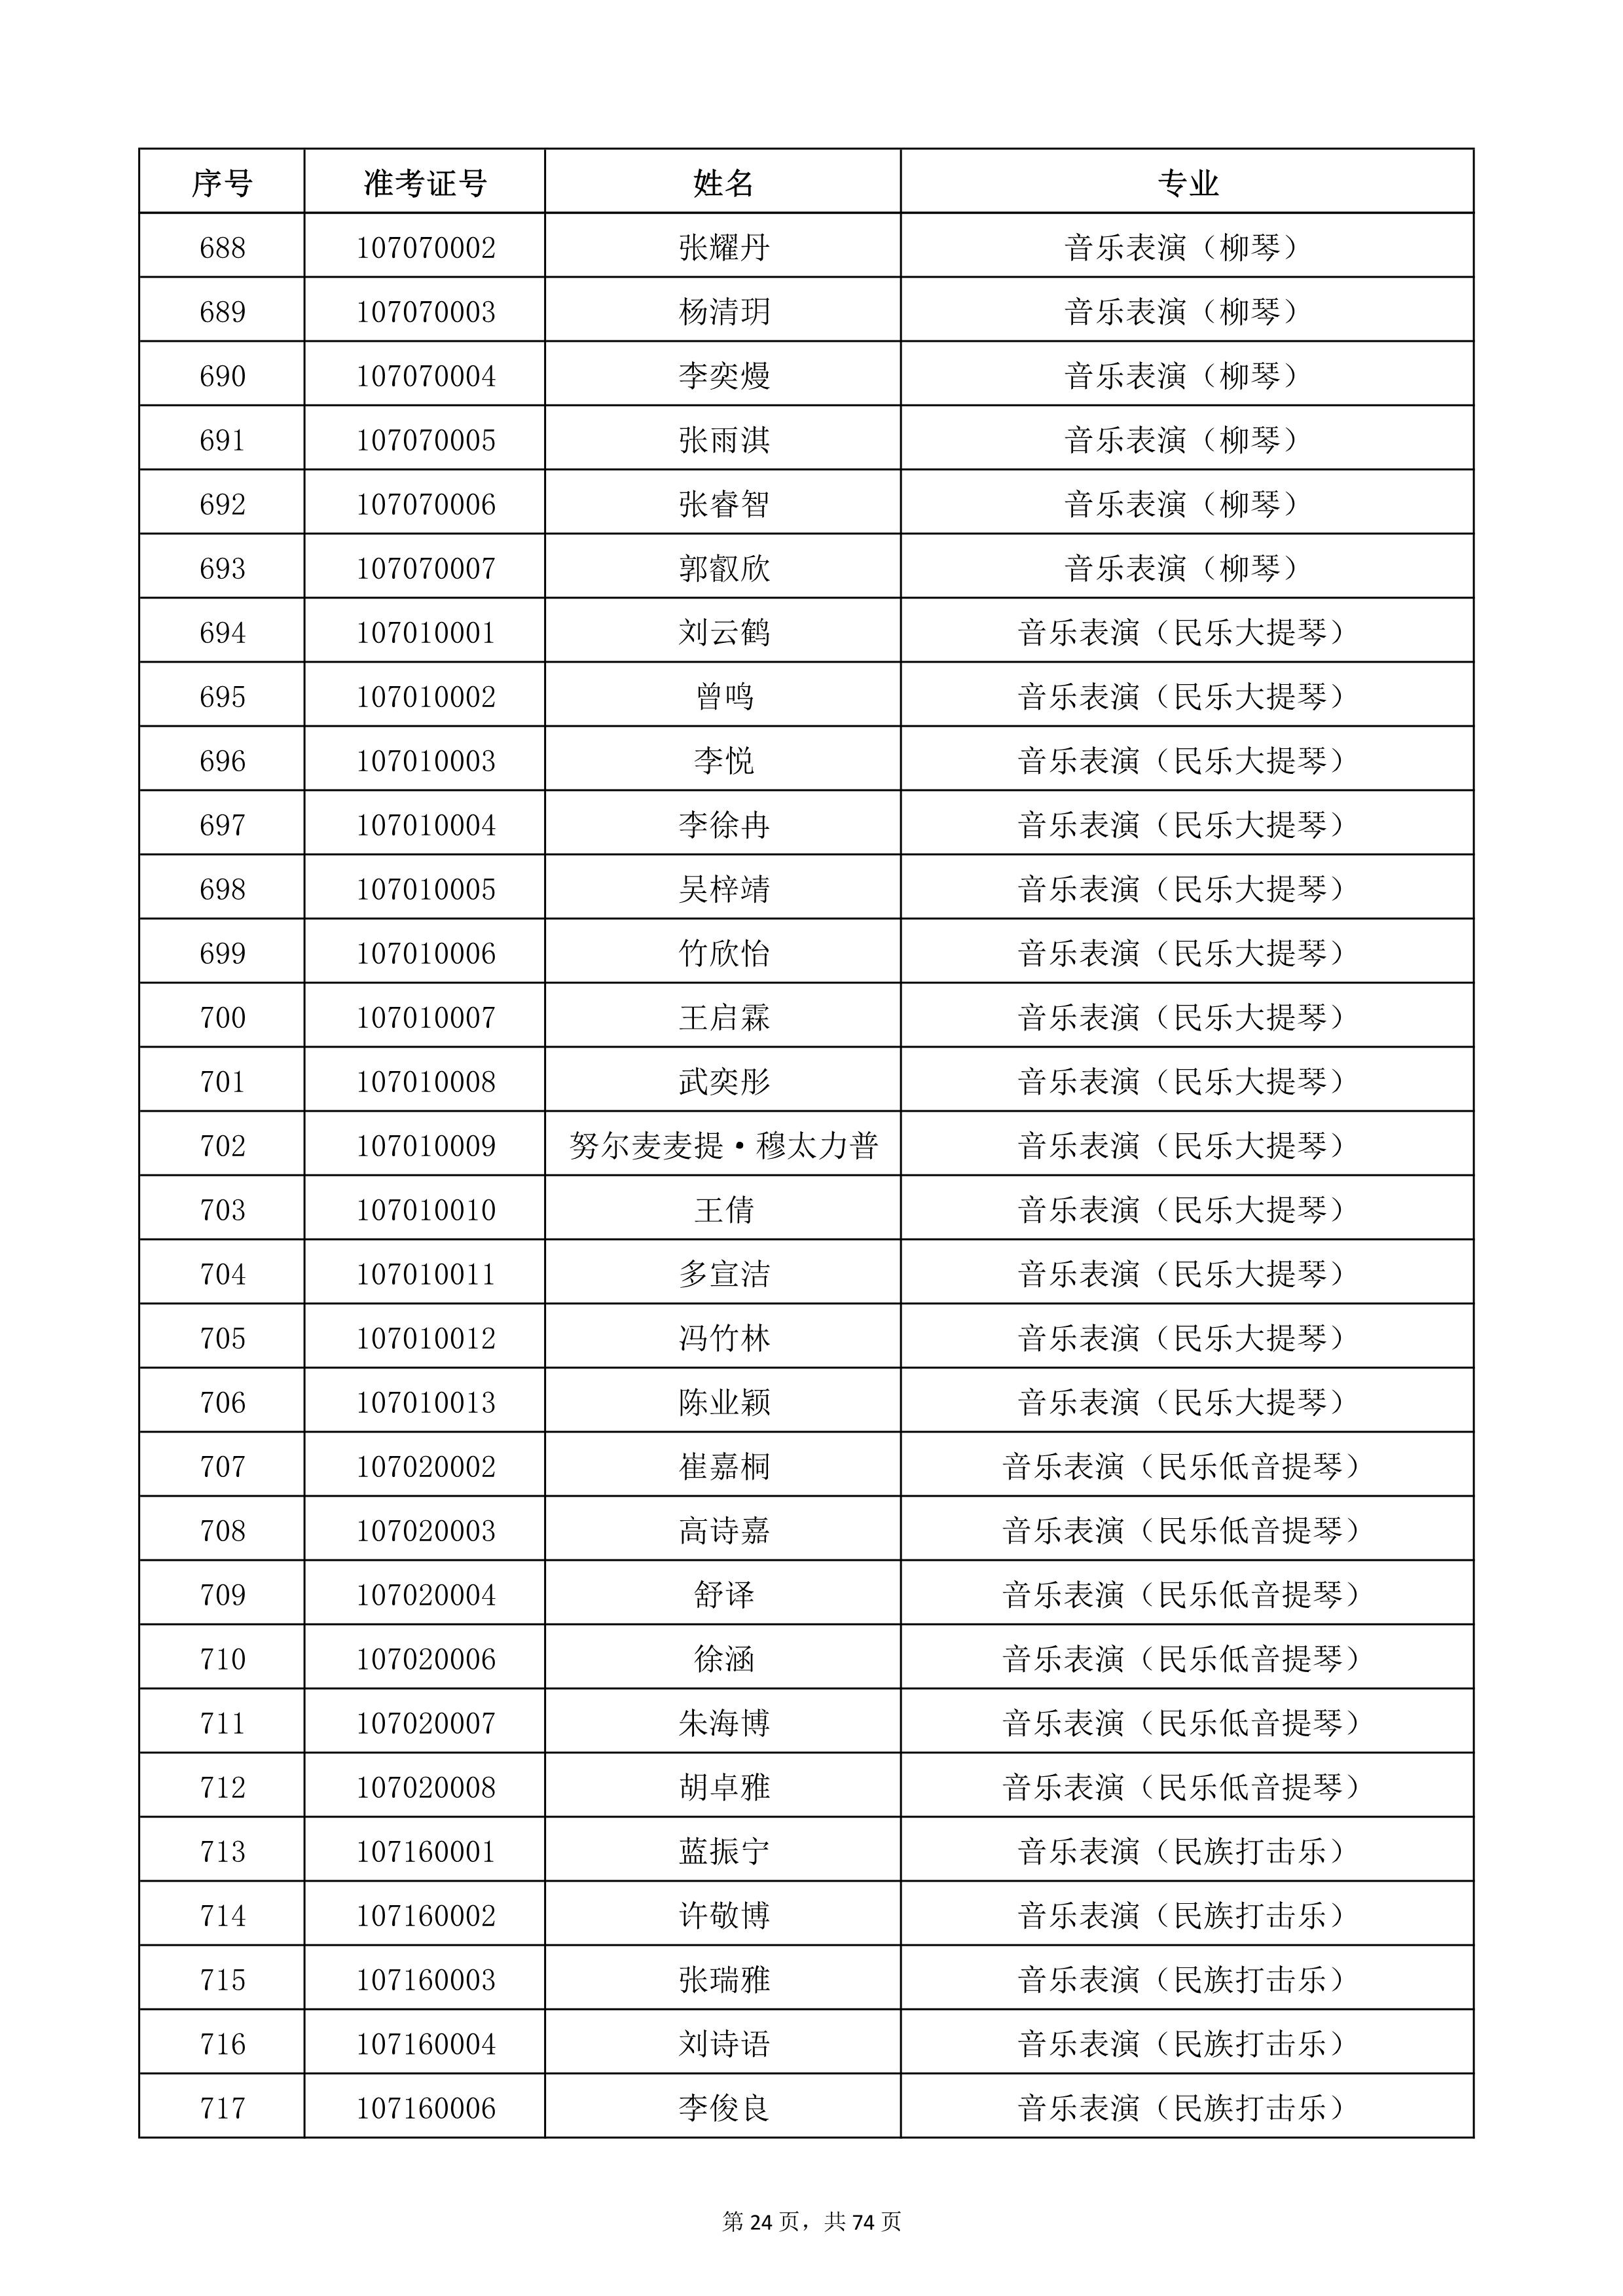 天津音乐学院2022年本科招生考试复试名单_24.jpg